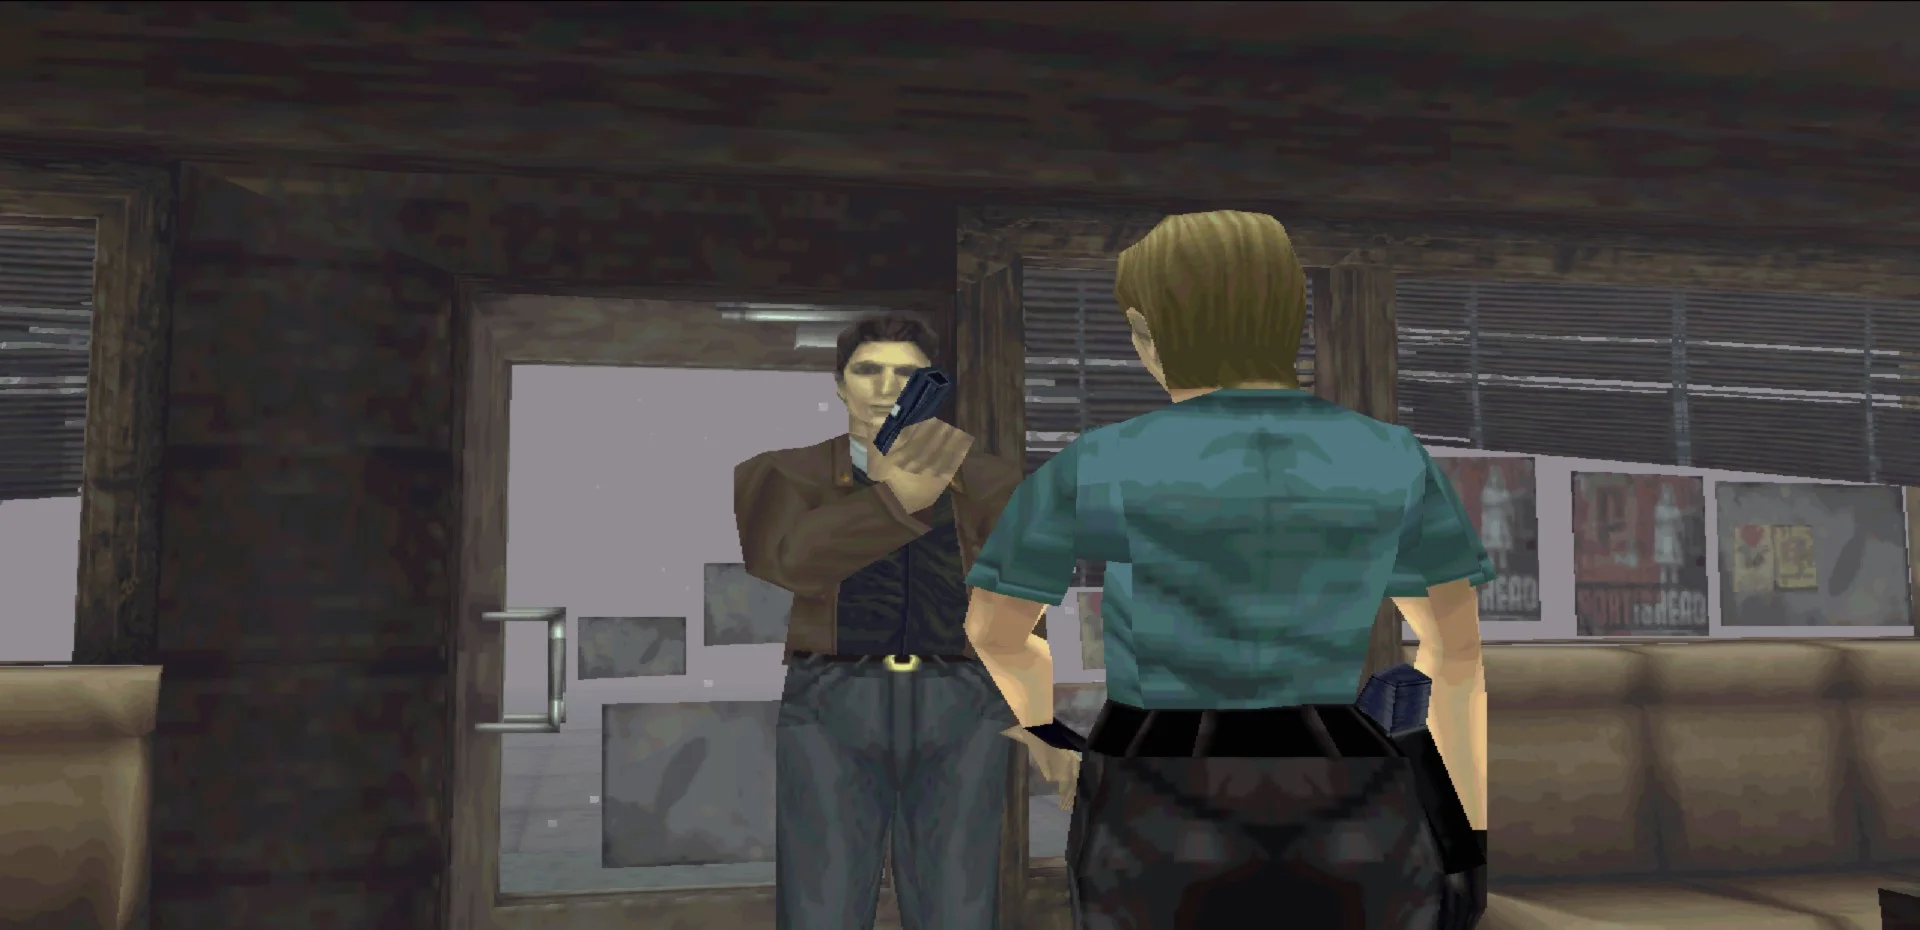 Лучшие игры за 20 лет. Год 1999: Heroes of Might and Magic 3, Silent Hill, CS - изображение обложка